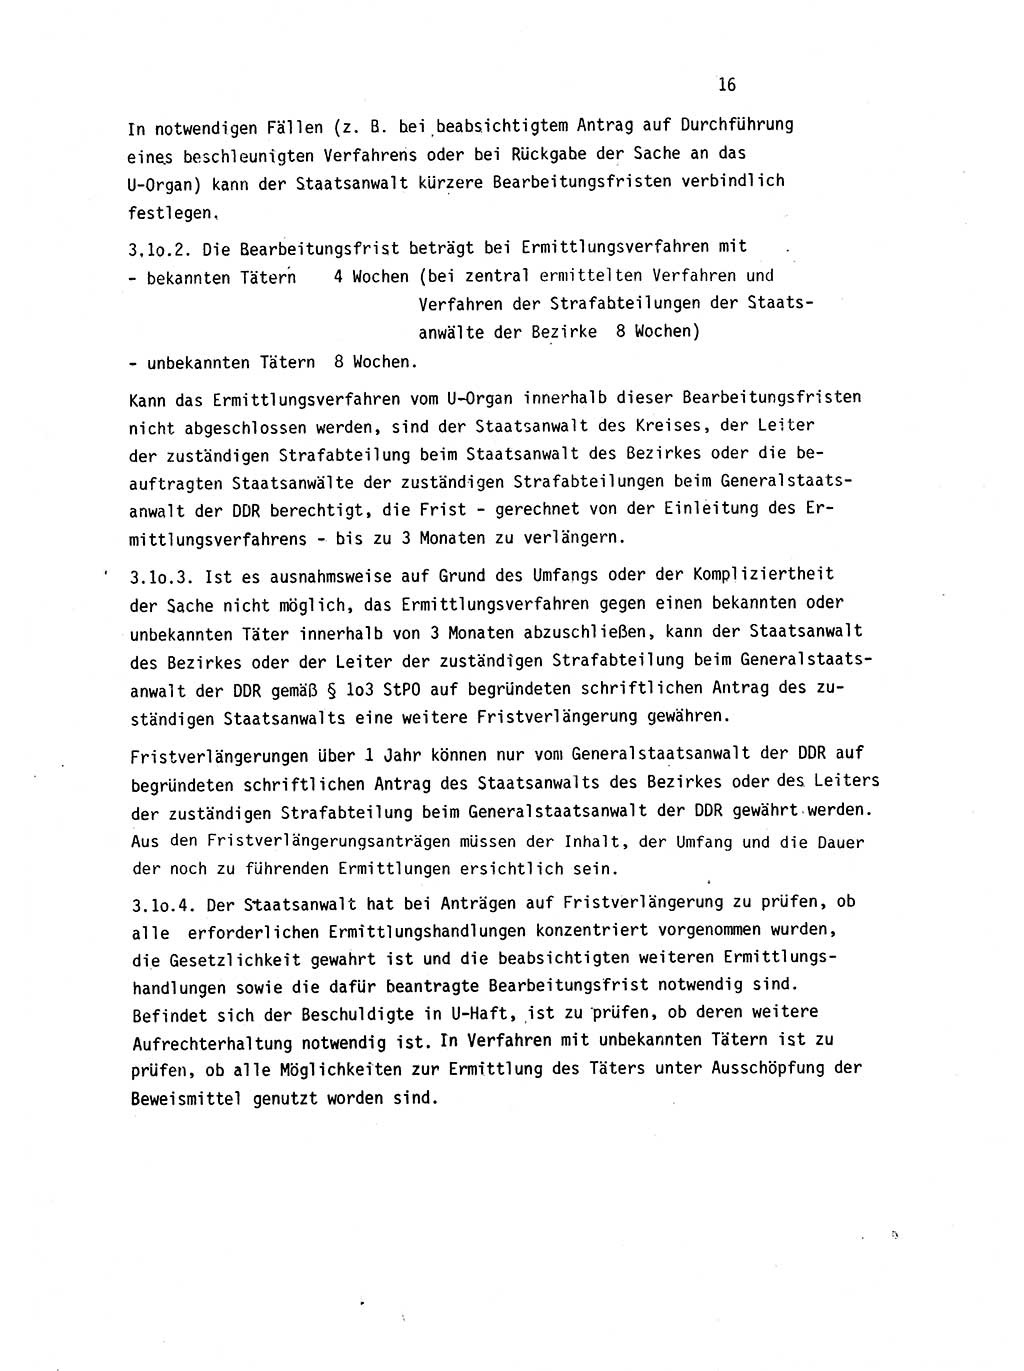 Leitung des Ermittlungsverfahren (EV) durch den Staatsanwalt [Deutsche Demokratische Republik (DDR)] 1985, Seite 16 (Ltg. EV StA DDR 1985, S. 16)